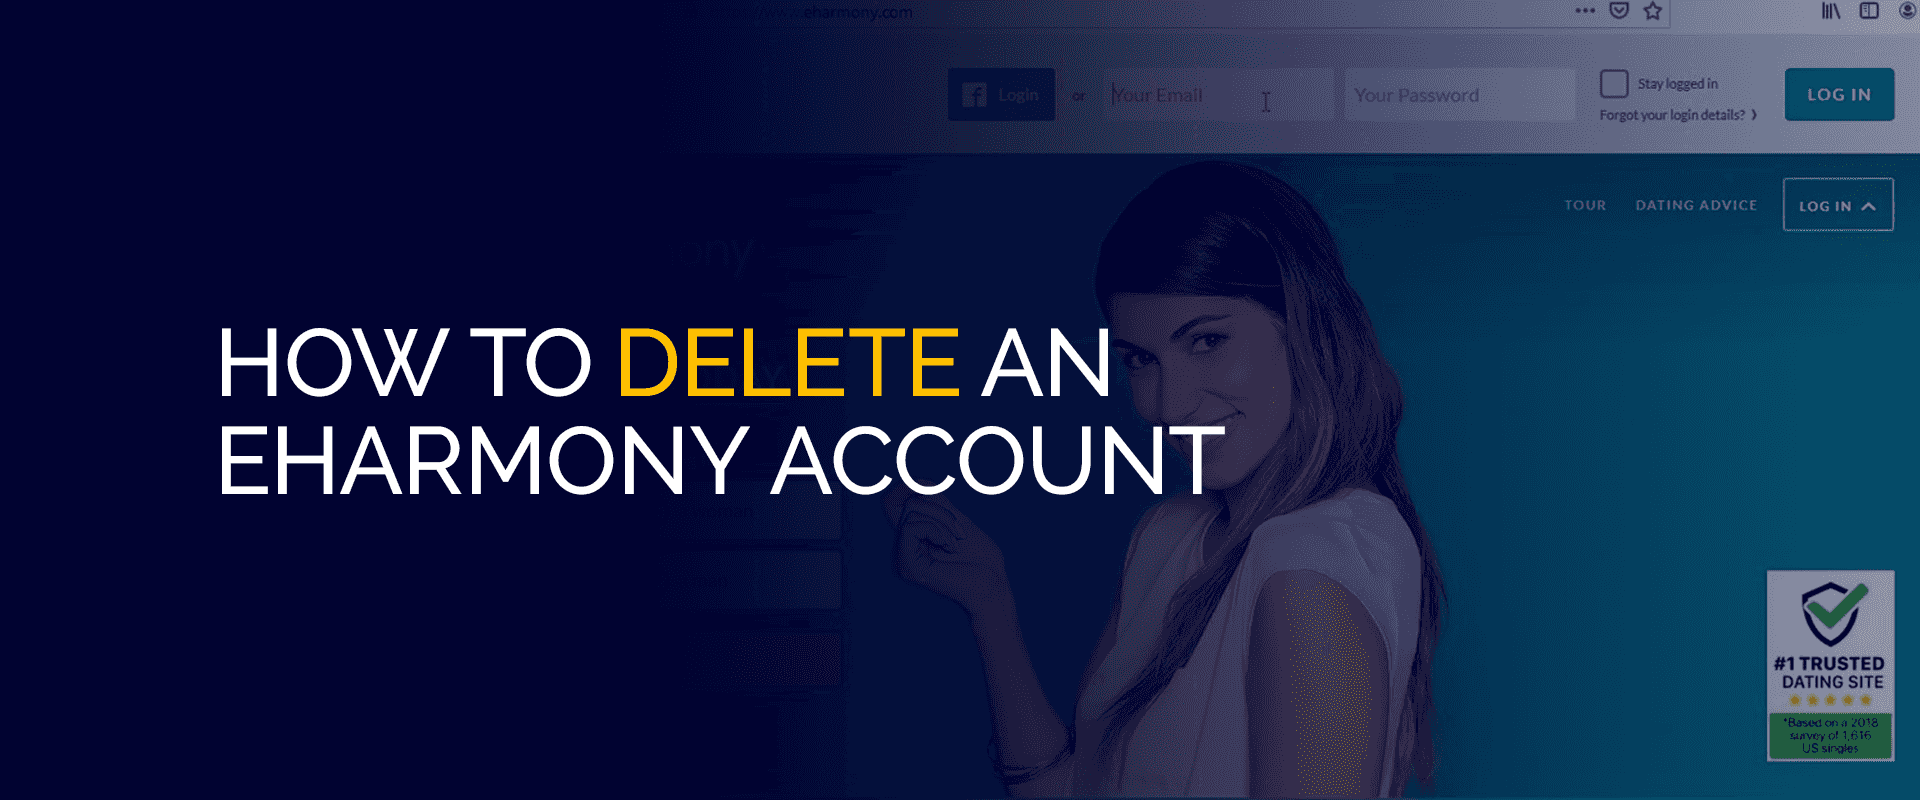 Come eliminare un account eHarmony